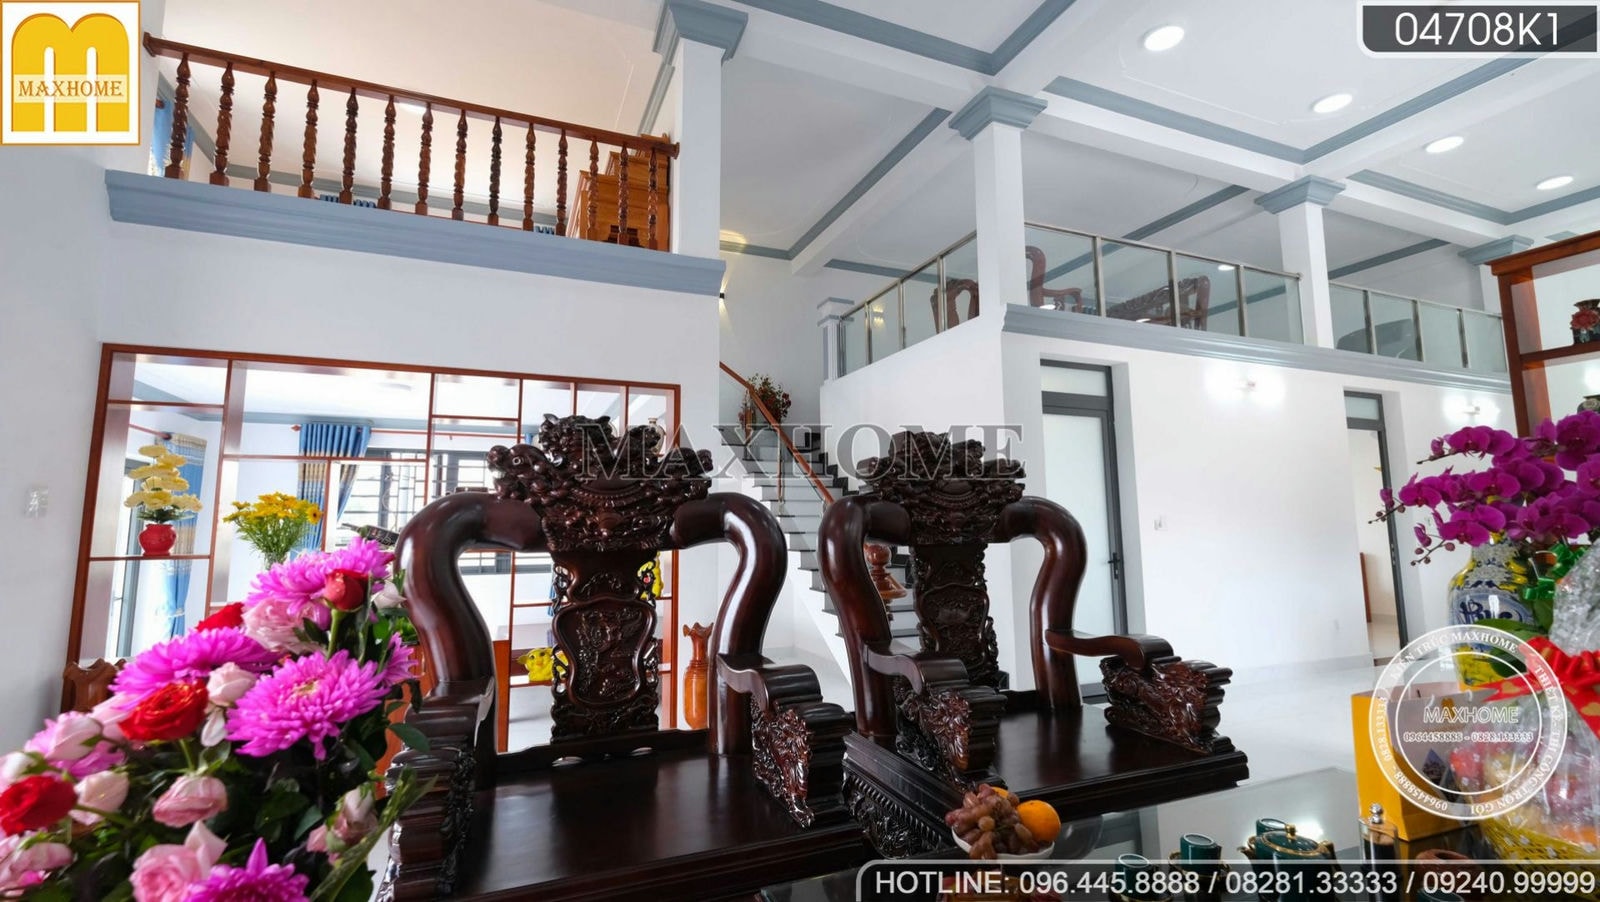 Maxhome hoàn thiện bộ nội thất full gỗ sang trọng cho ngôi nhà vườn mái Thái